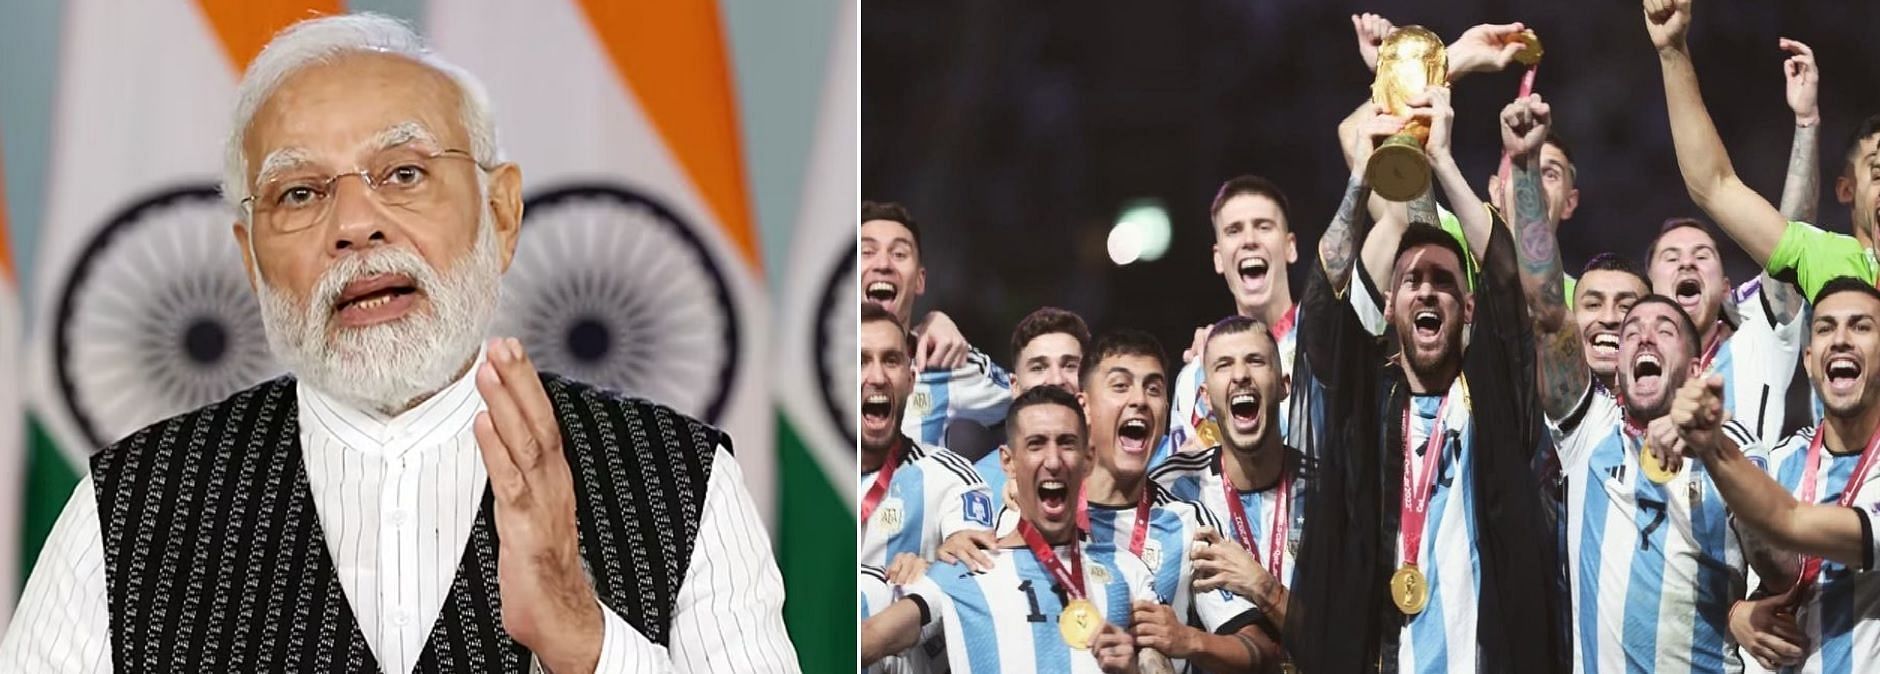 प्रधानमंत्री नरेंद्र मोदी ने अर्जेंटीना को बधाई दी और फ्रांस के खेल की भी तारीफ की।